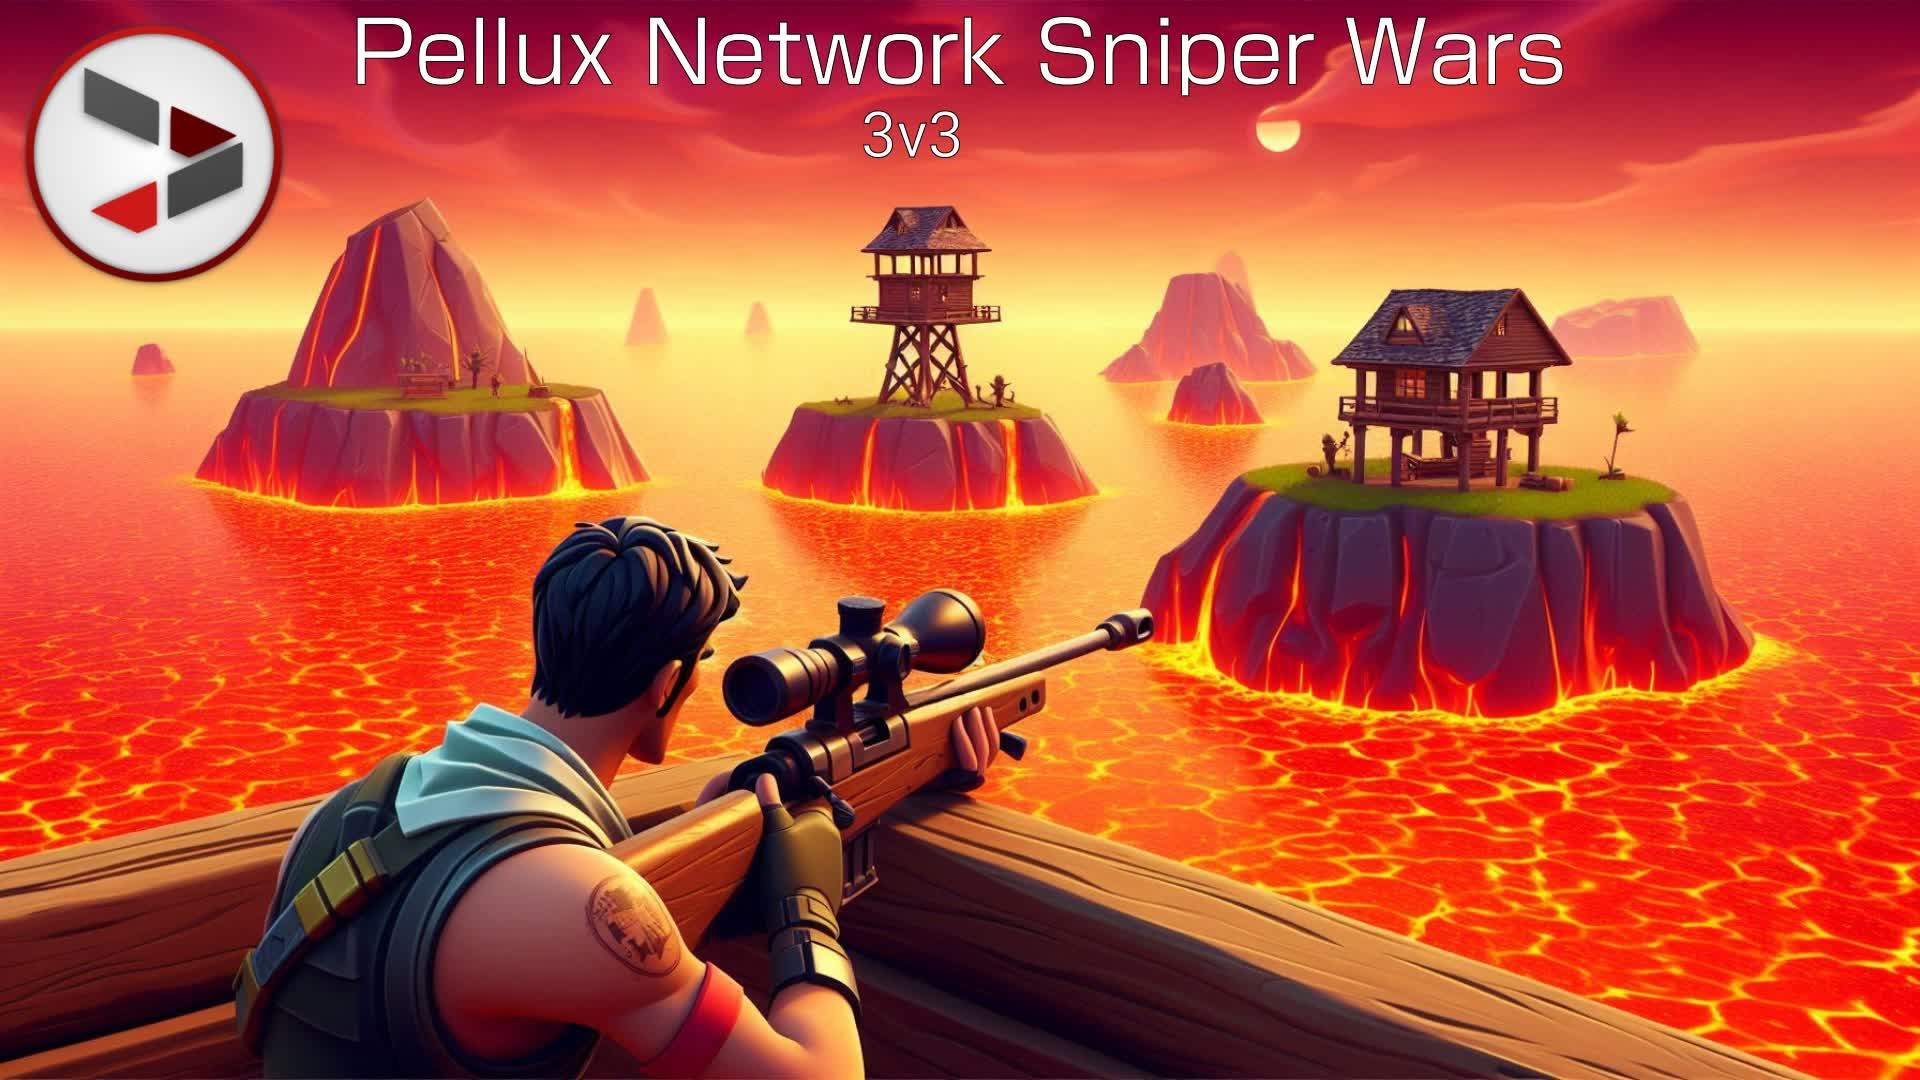 Pellux Network Sniper Wars